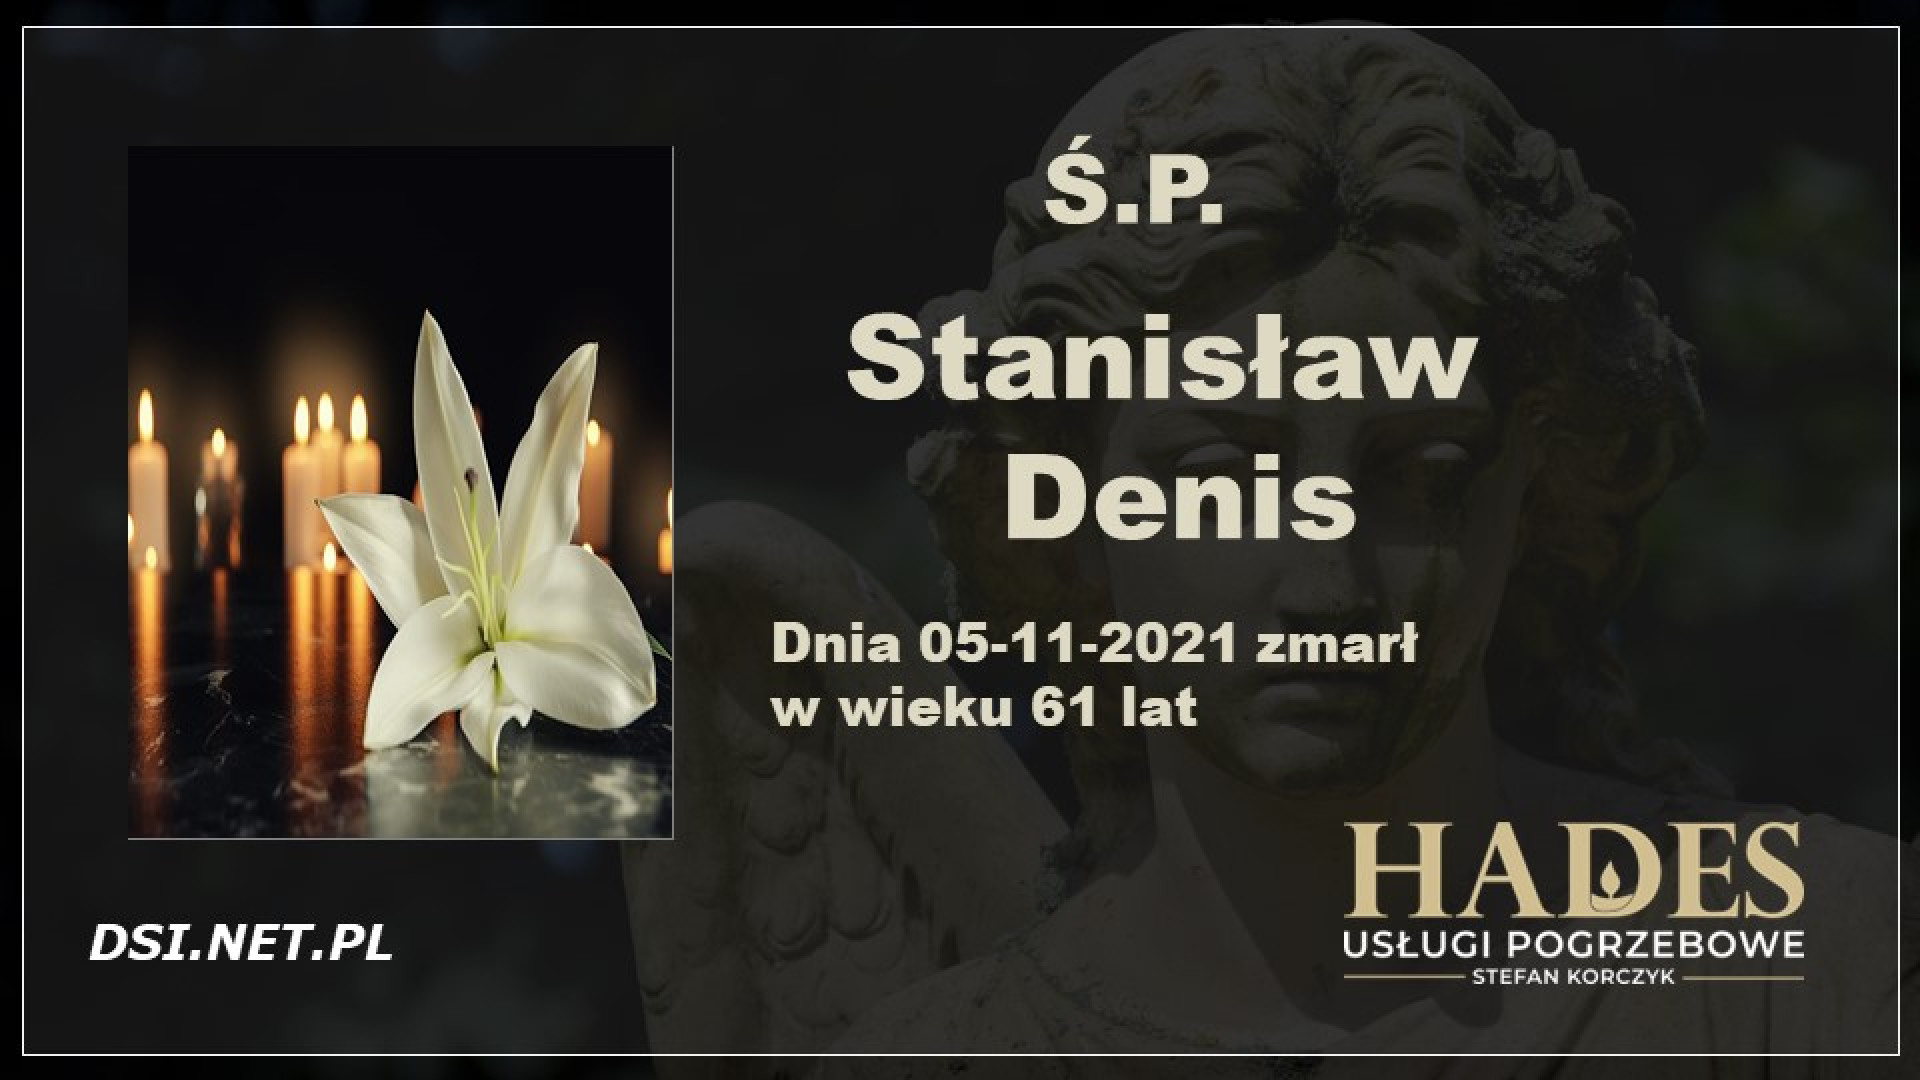 Ś.P. Stanisław Denis